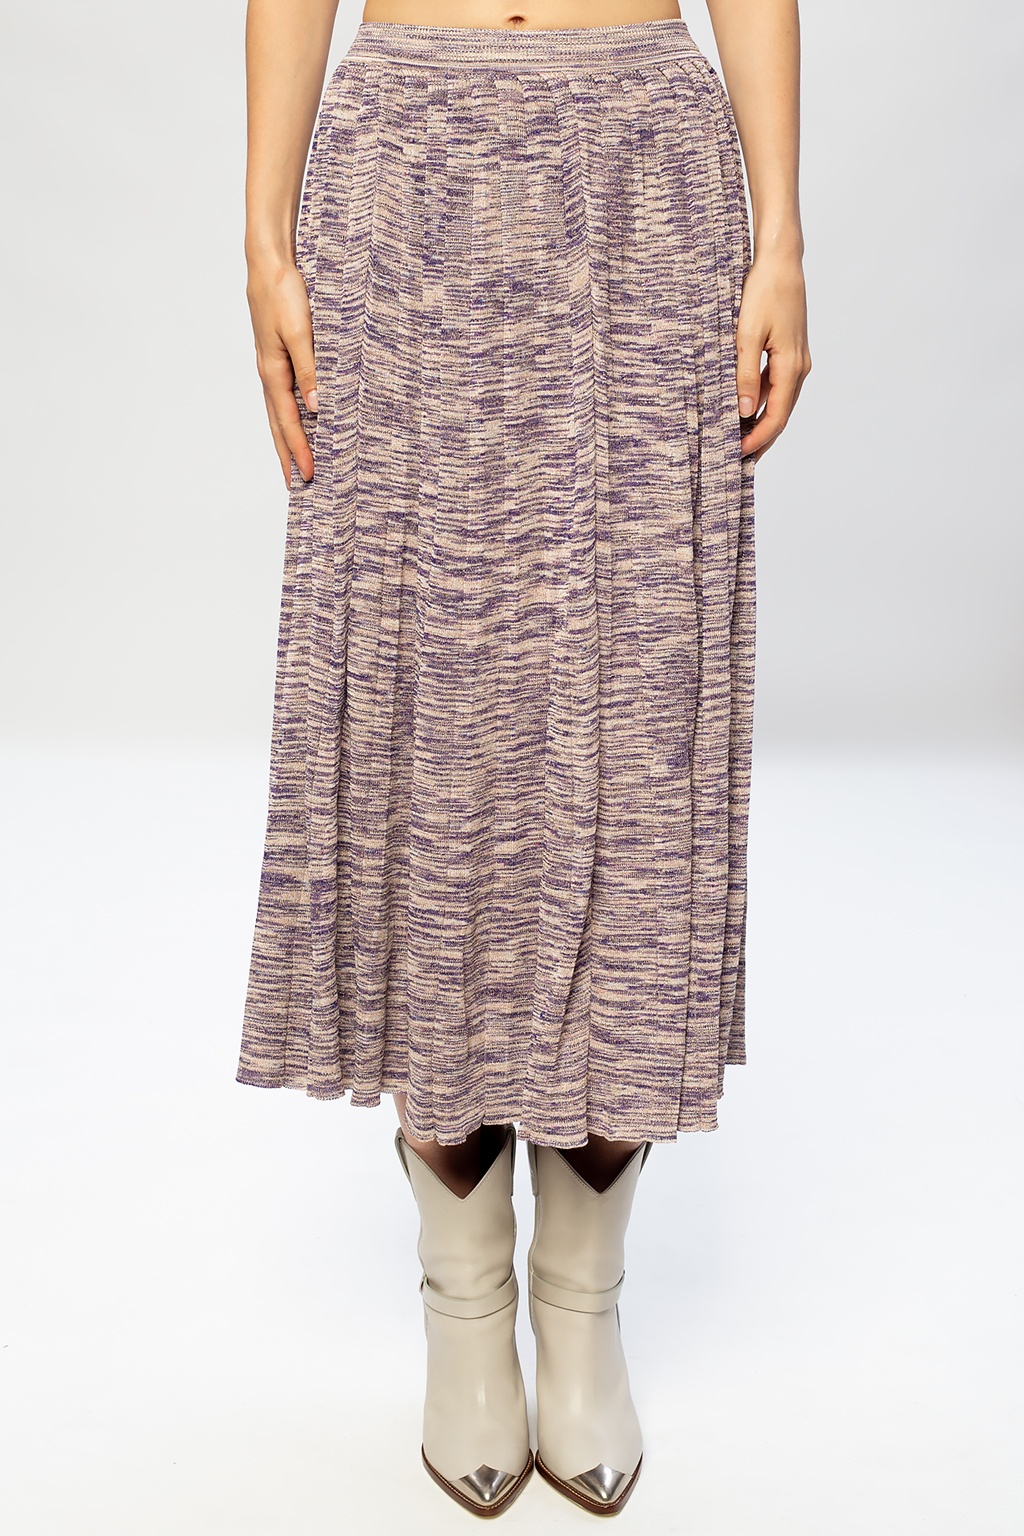 Ulla Johnson ‘Marlie’ skirt with lurex trim